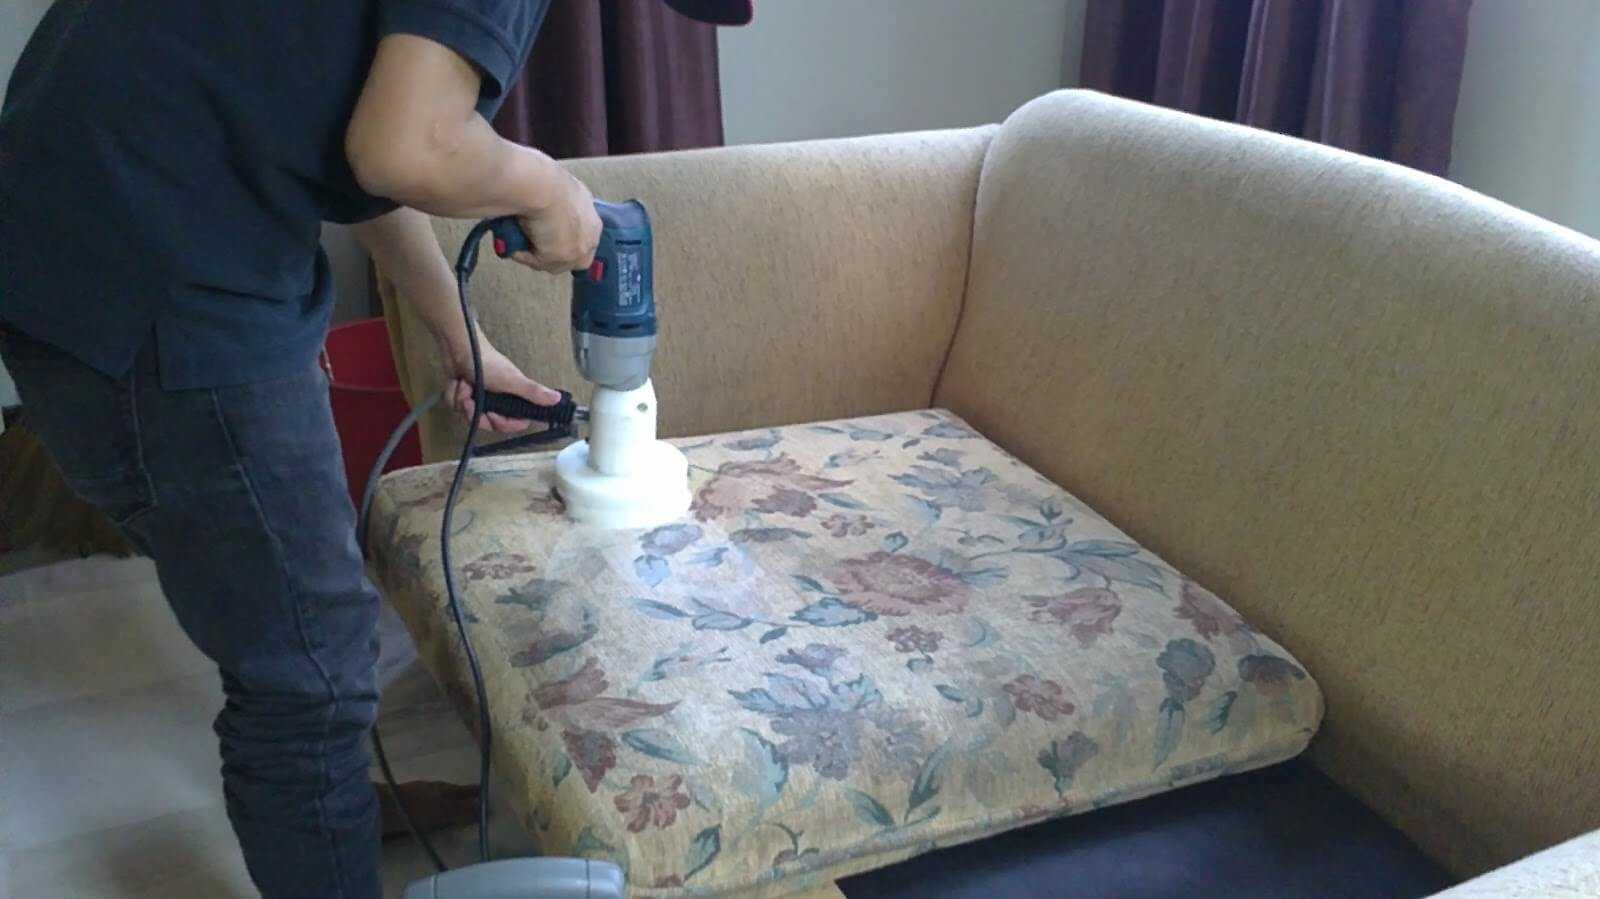 Бюджетные средства и способы, чем почистить диван из ткани в домашних условиях